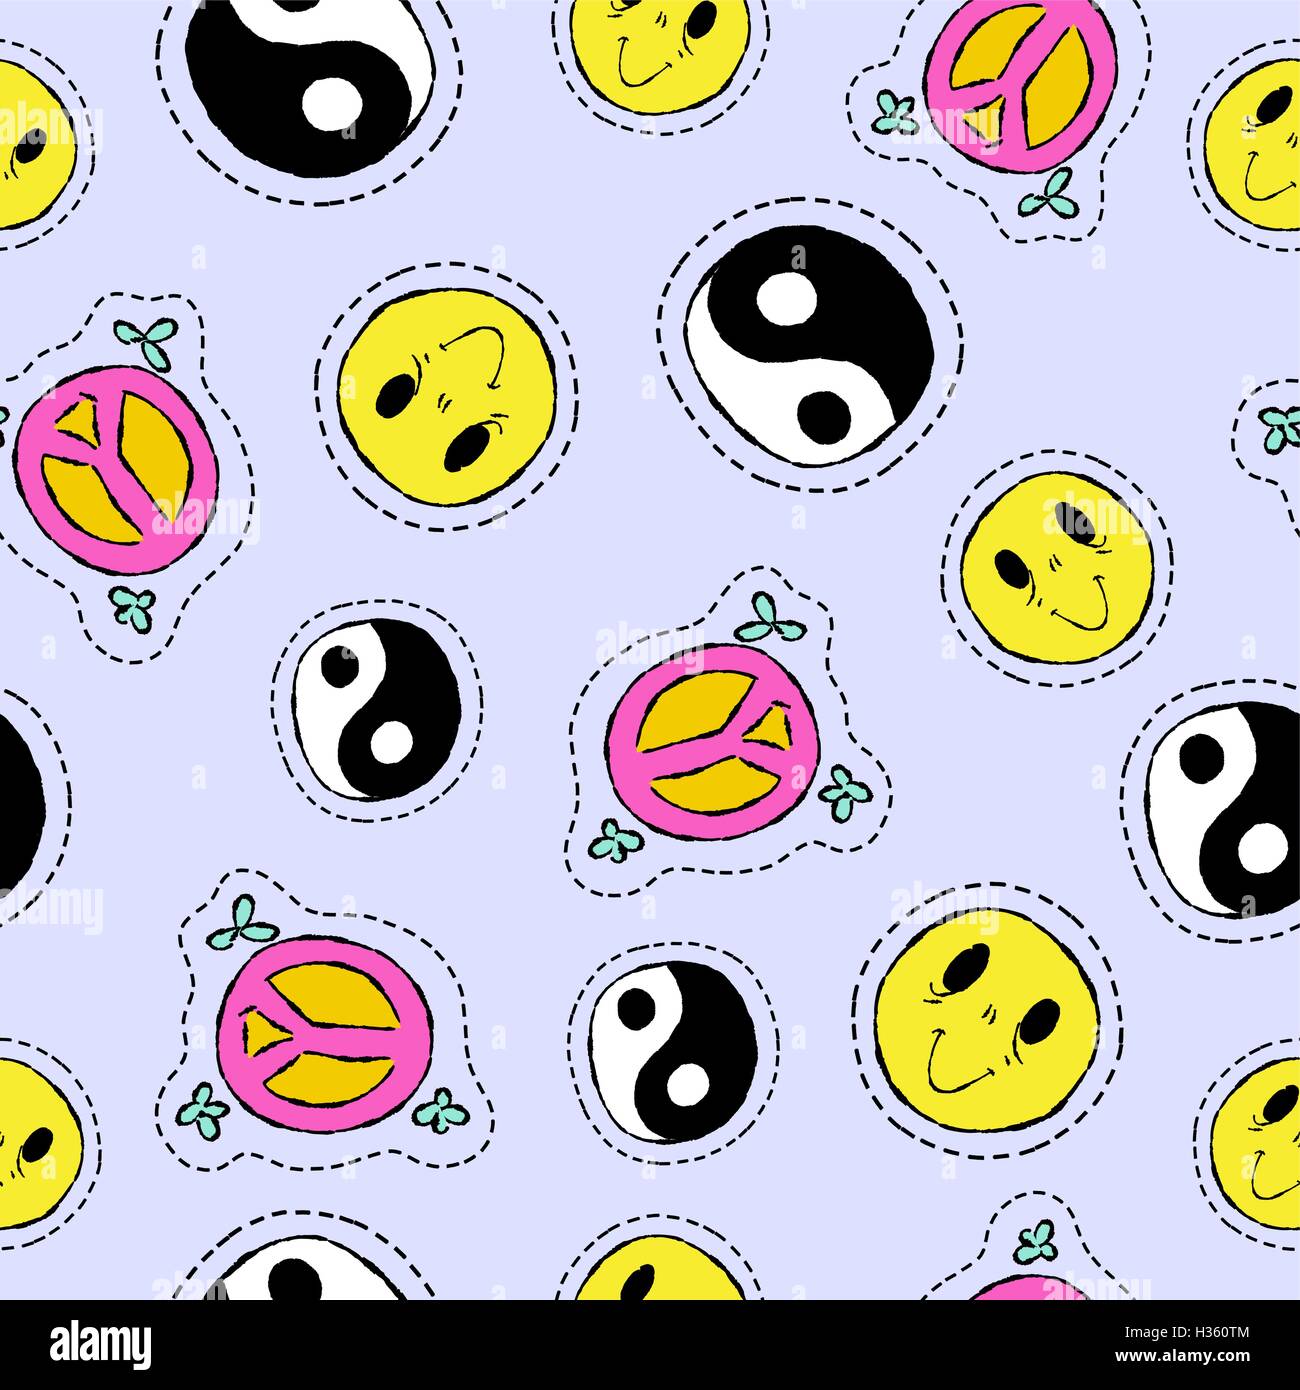 Hand drawn seamless pattern avec retro 90s style patch d'icônes. Smiley Face, Ying Yang symbole et signe de paix à l'arrière-plan. EPS10 vec Illustration de Vecteur